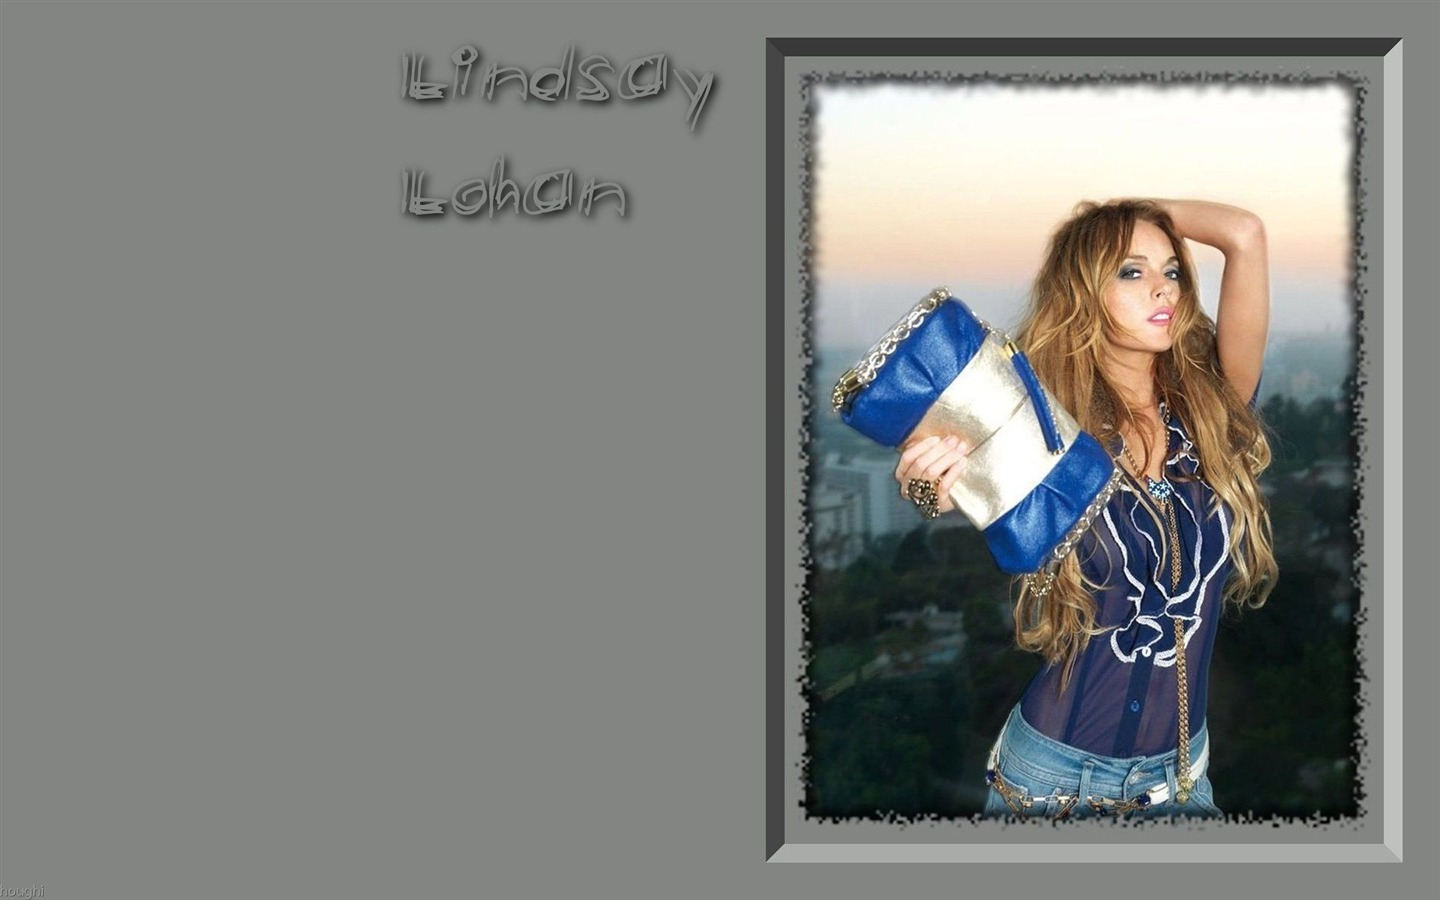 Lindsay Lohan 林賽·羅韓 美女壁紙 #18 - 1440x900